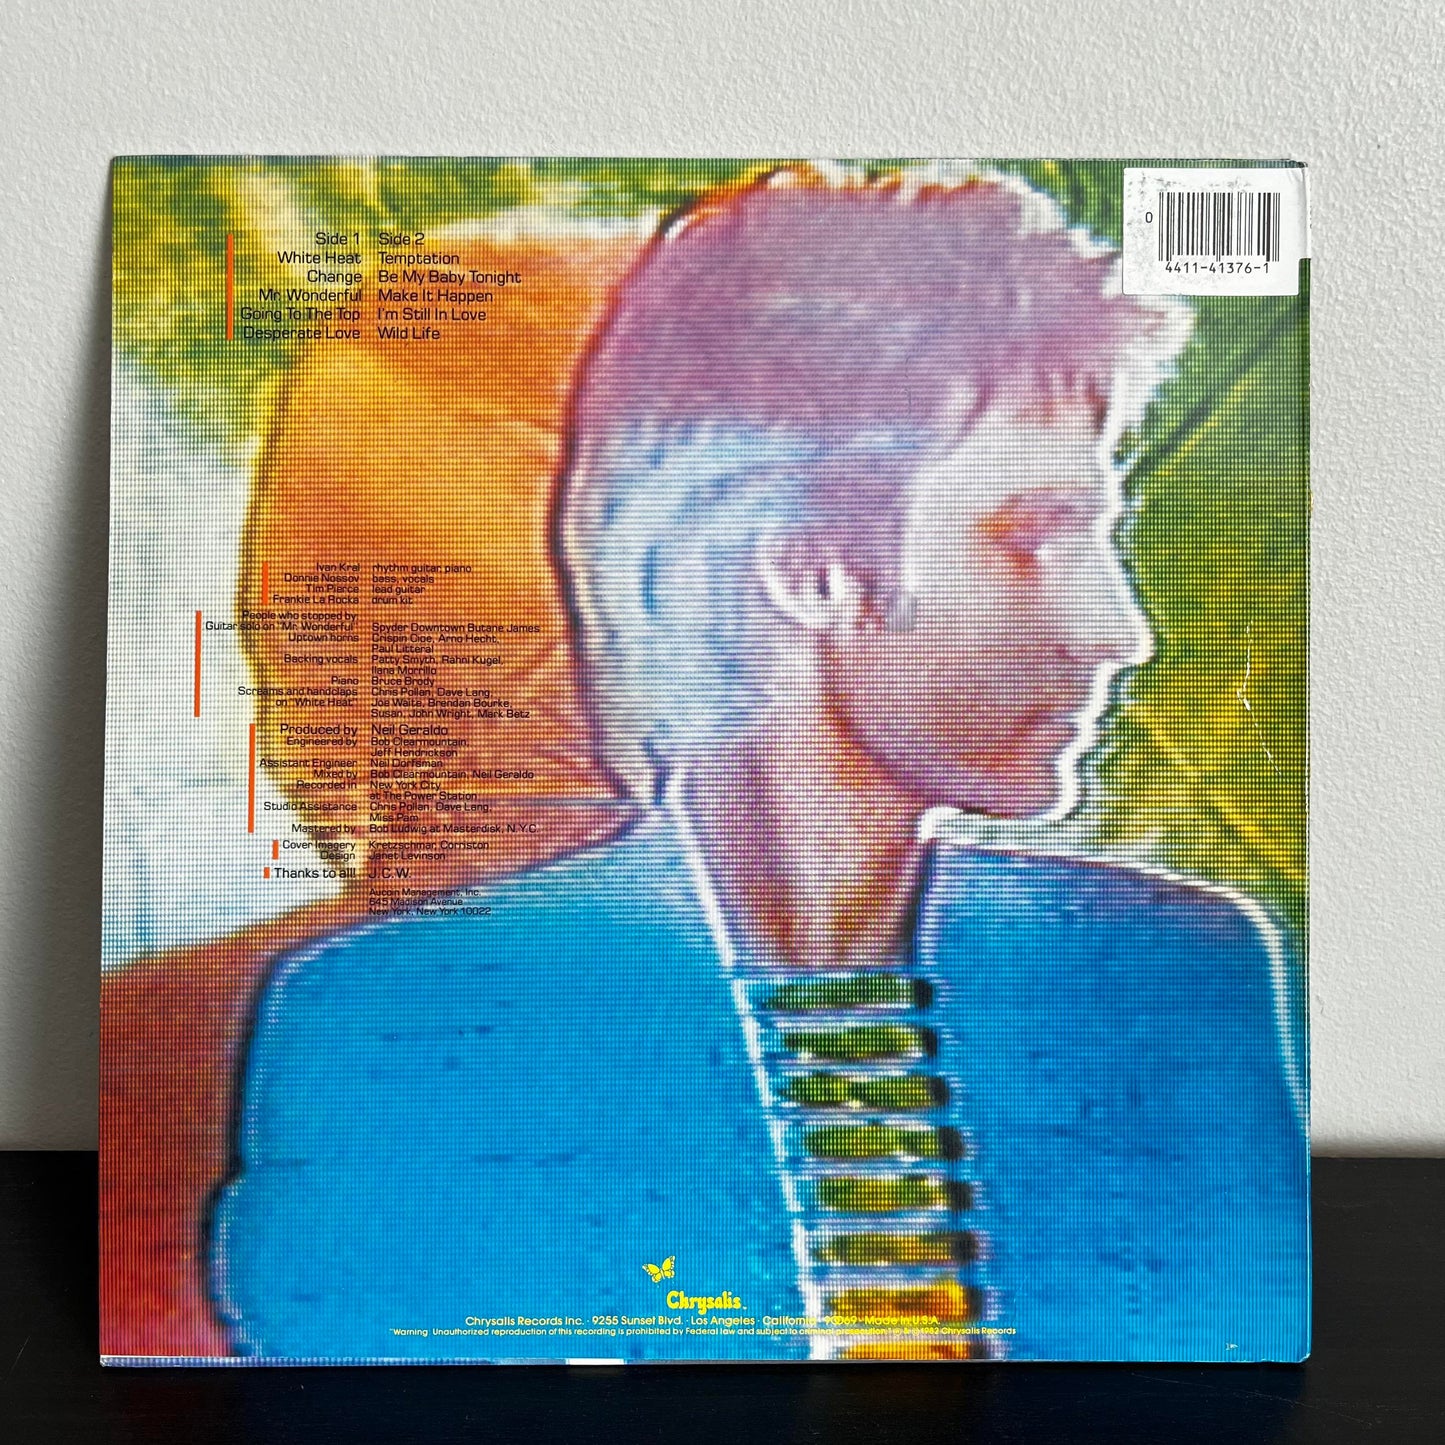 Ignition - John Waite FV 41376 Vinyl VG+